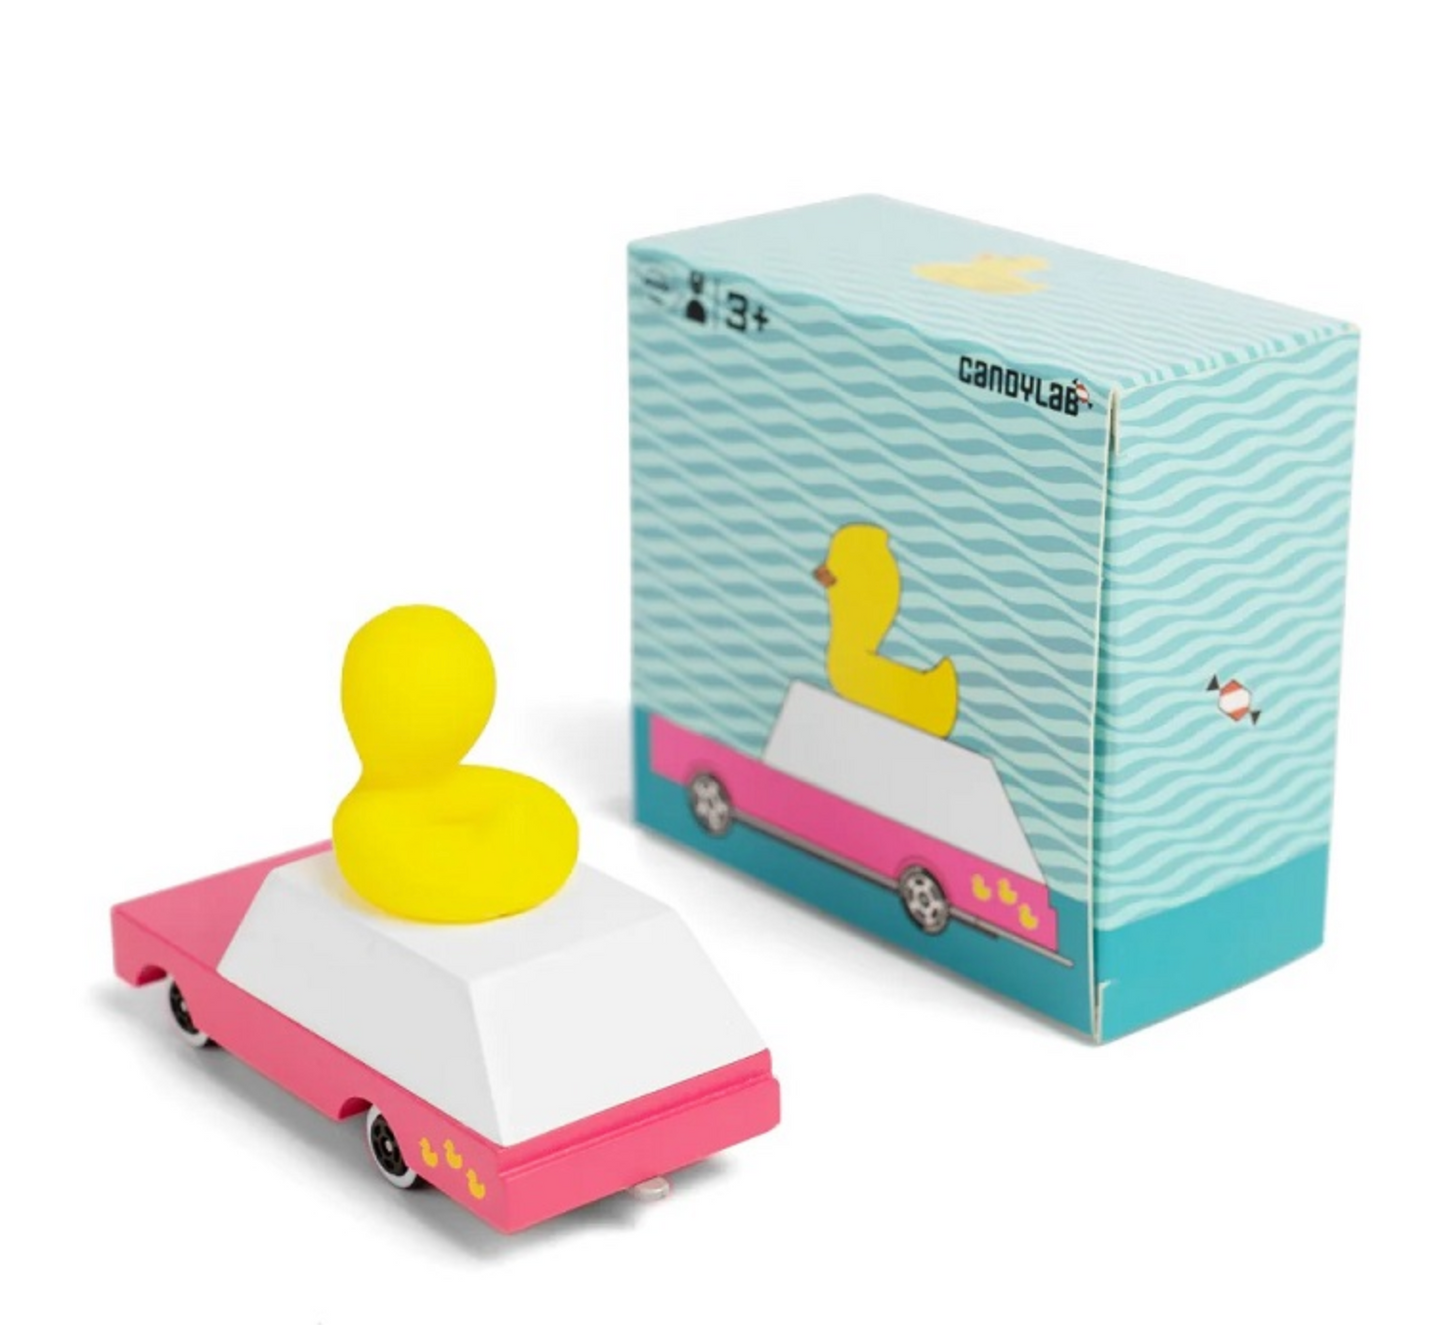 Candycar Wagon Duck By Candylab